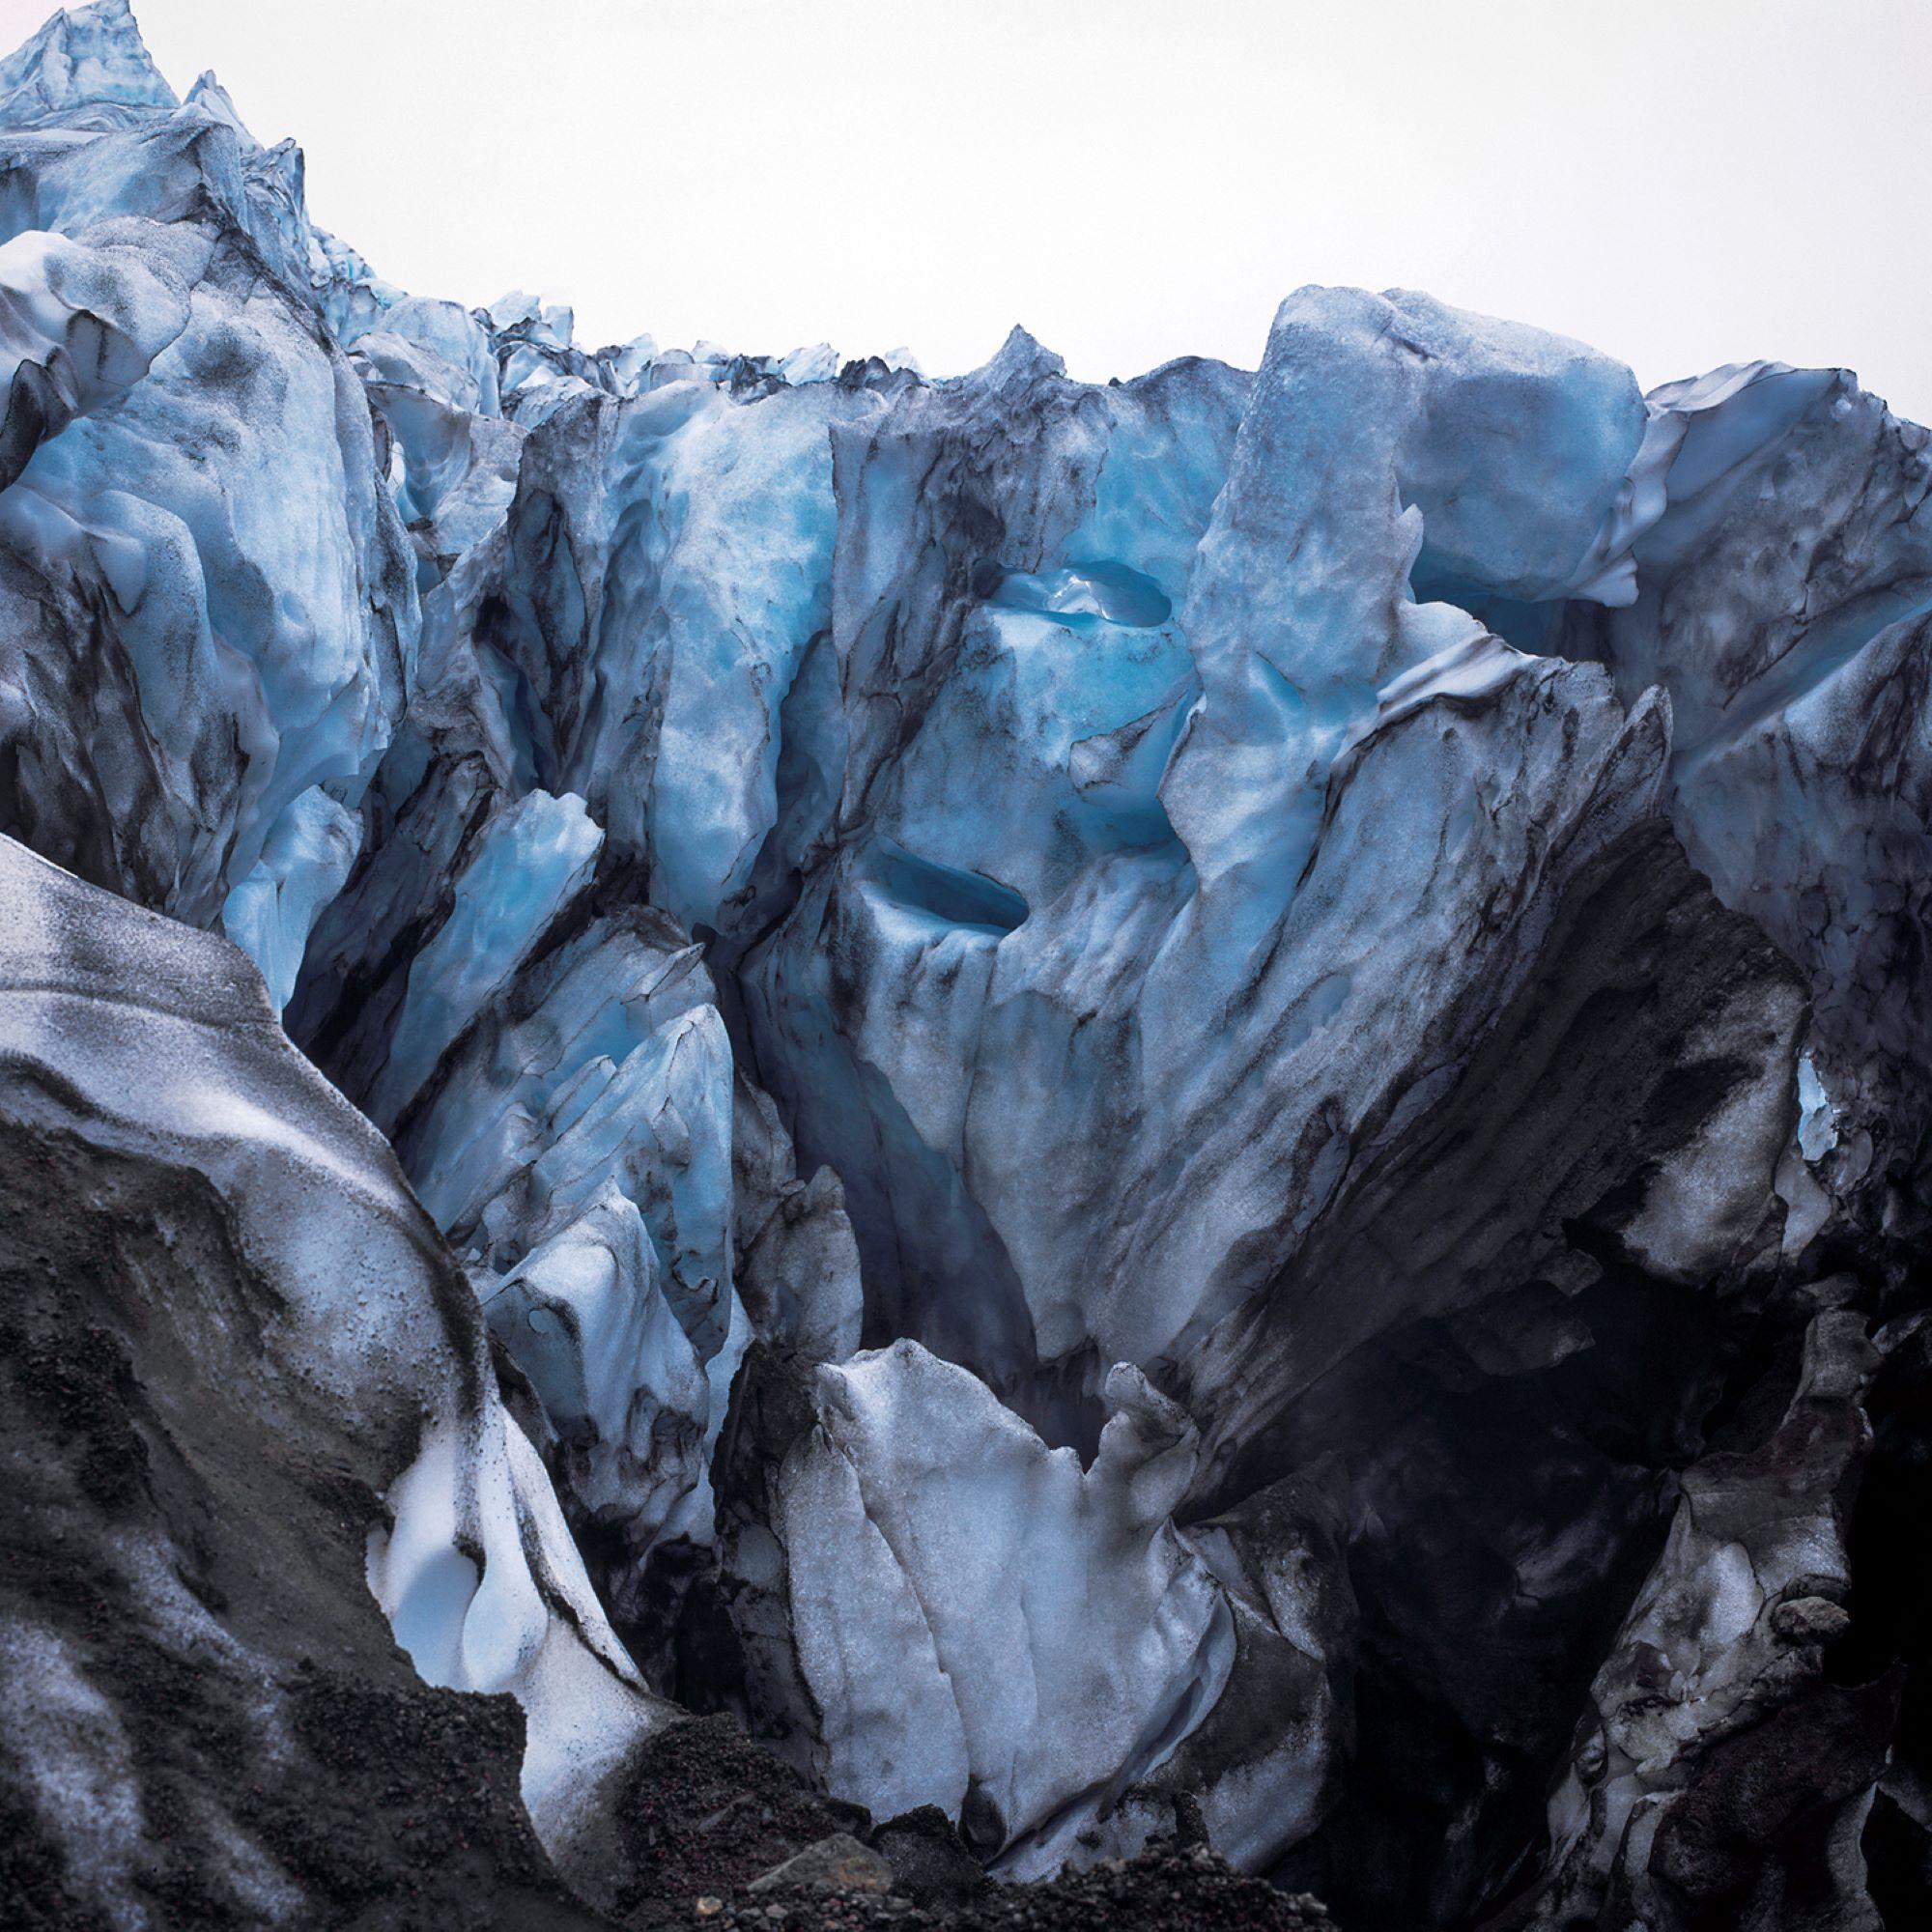 Glacier ist eine limitierte Auflage der Fotografie des zeitgenössischen Künstlers Luca Marziale. 

Dieses Foto wird nur als ungerahmter Abzug verkauft. Sie ist in 2 Größen erhältlich:
*76,2 cm × 76,2 cm (30" × 30"), Auflage: 10 Exemplare
*114,3 ×